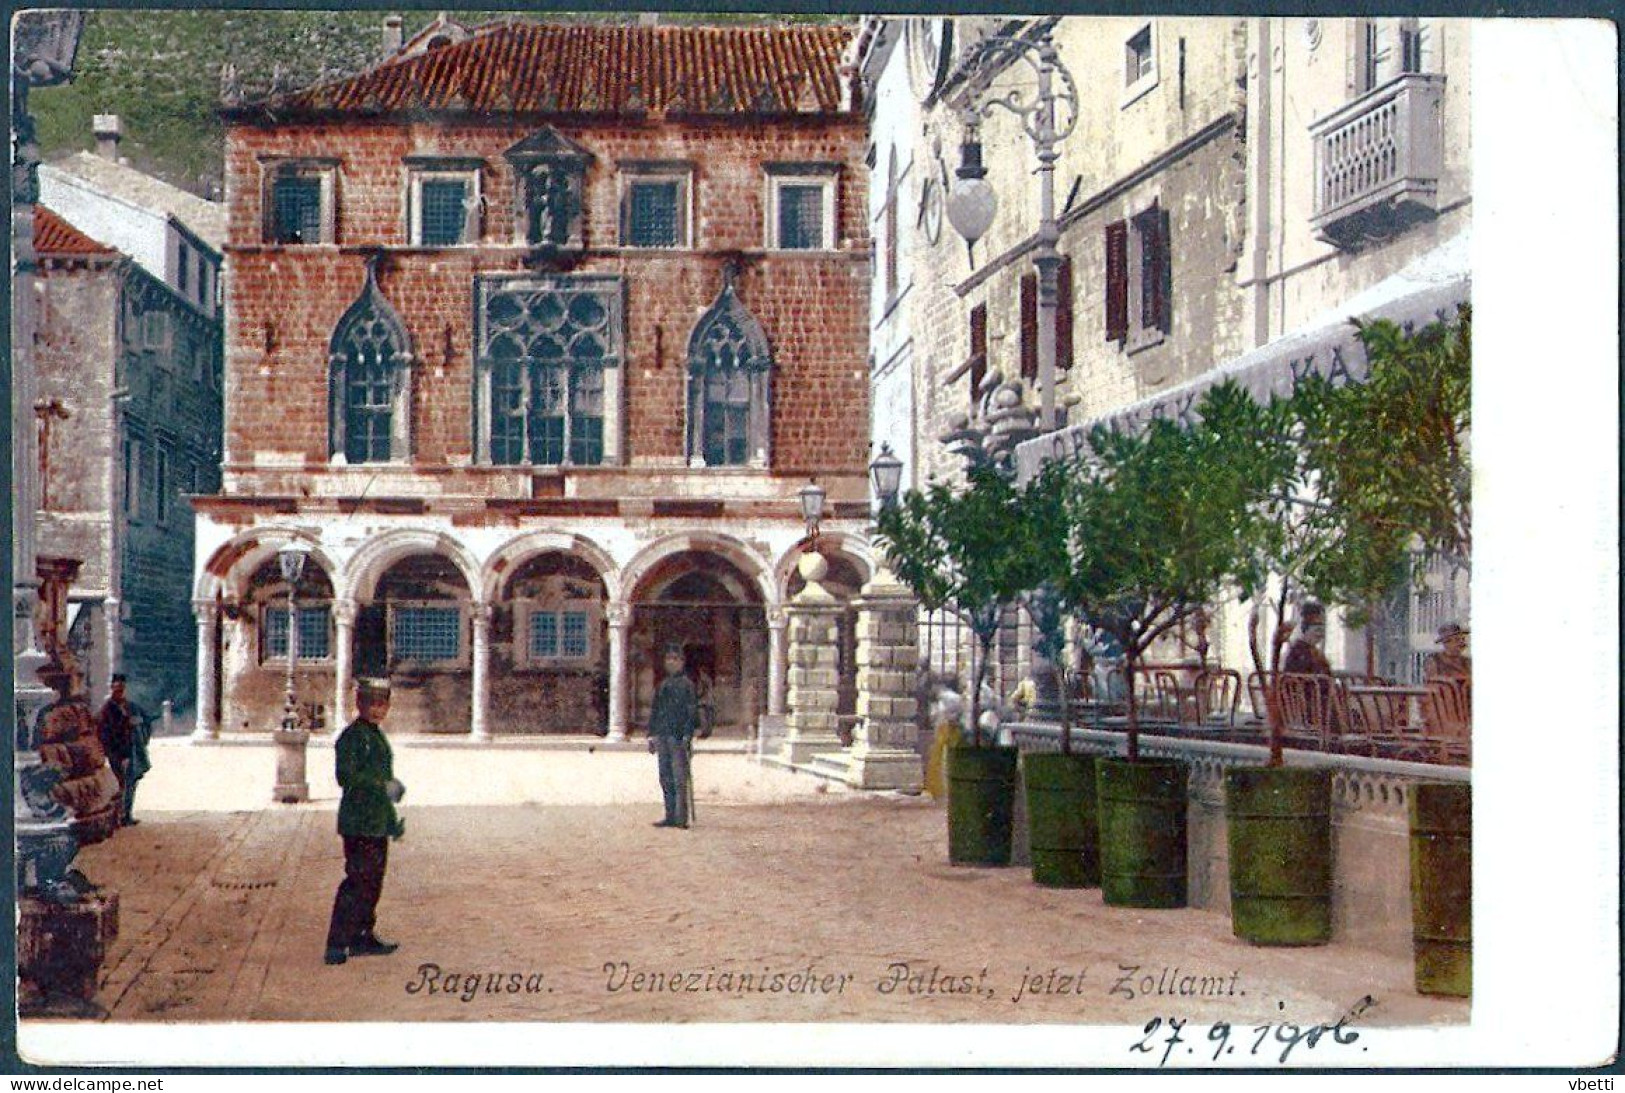 Croatia / Hrvatska: Dubrovnik (Ragusa), Venezianischer Palast, Jetzt Zollamt   1906 - Croatia